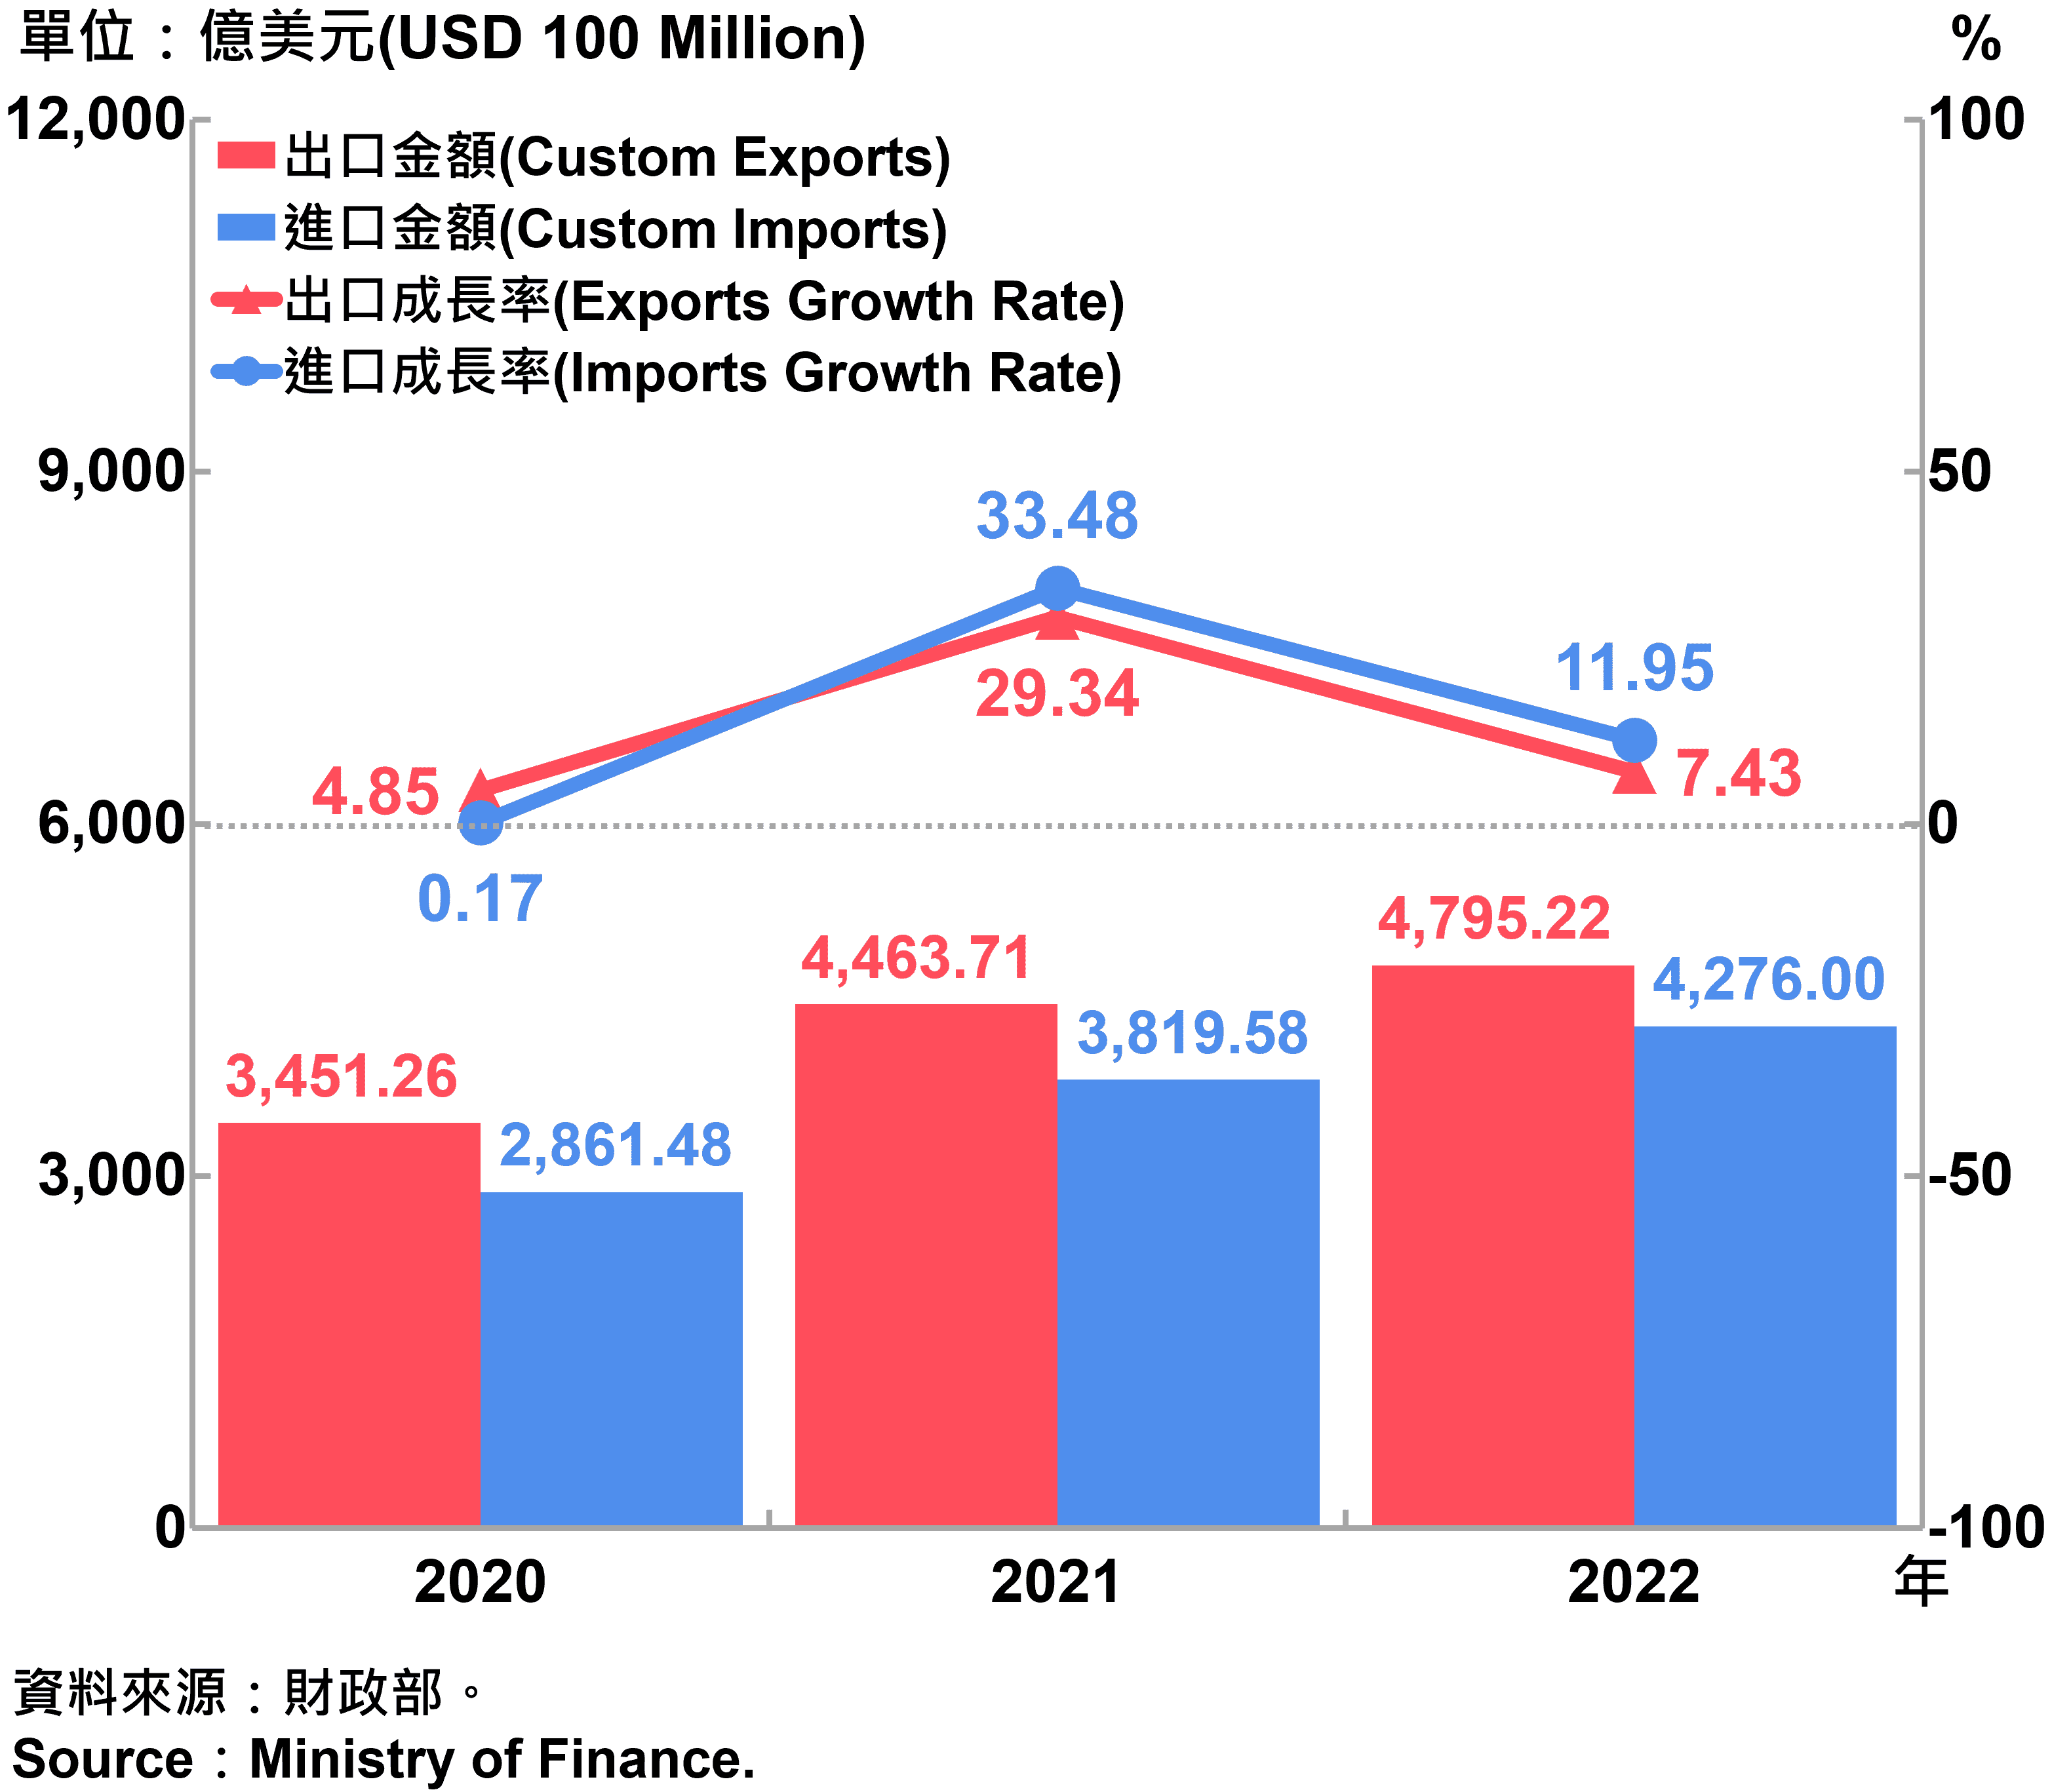 臺灣海關進出口金額與成長率 Custom Exports, Custom Imports and Growth Rate in Taiwan